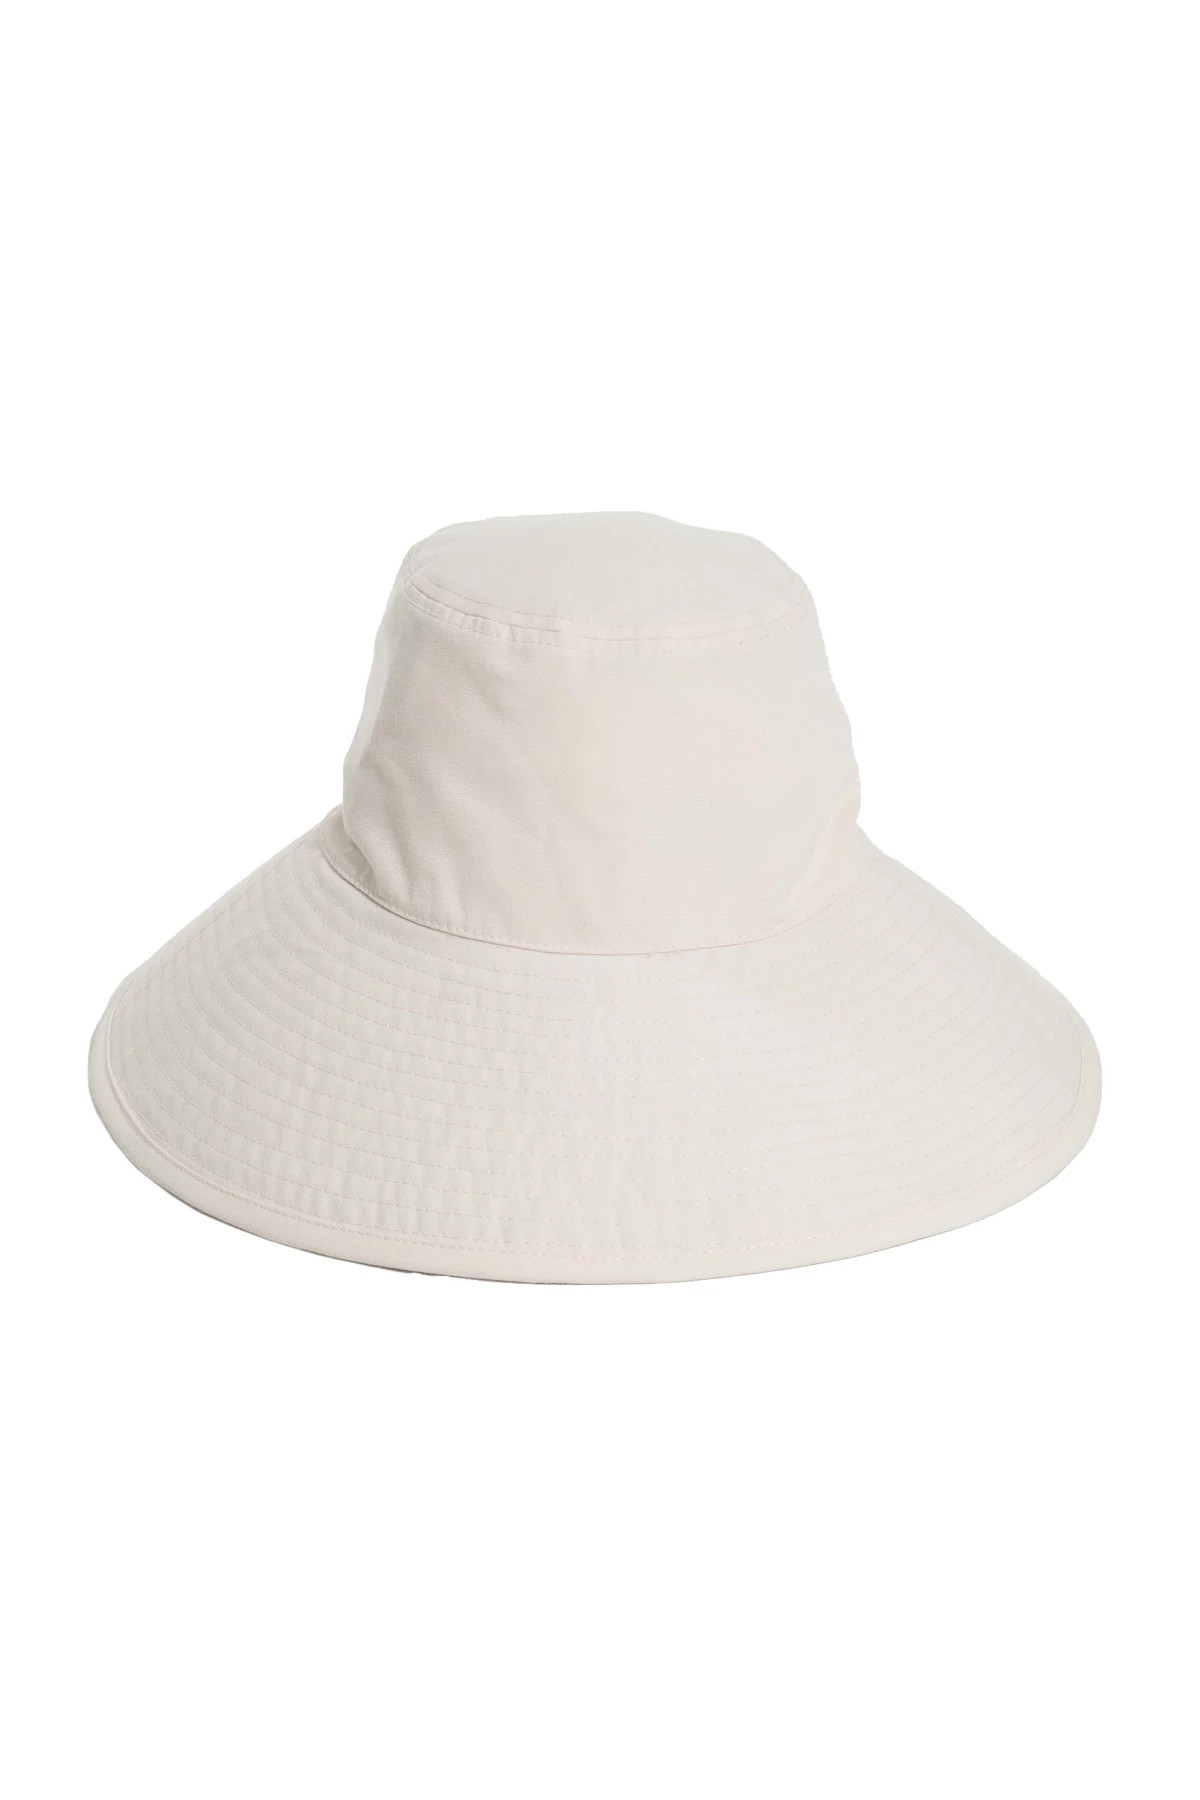 ANTIQUE WHITE Canvas Wide Brim Hat L/XL image number 1